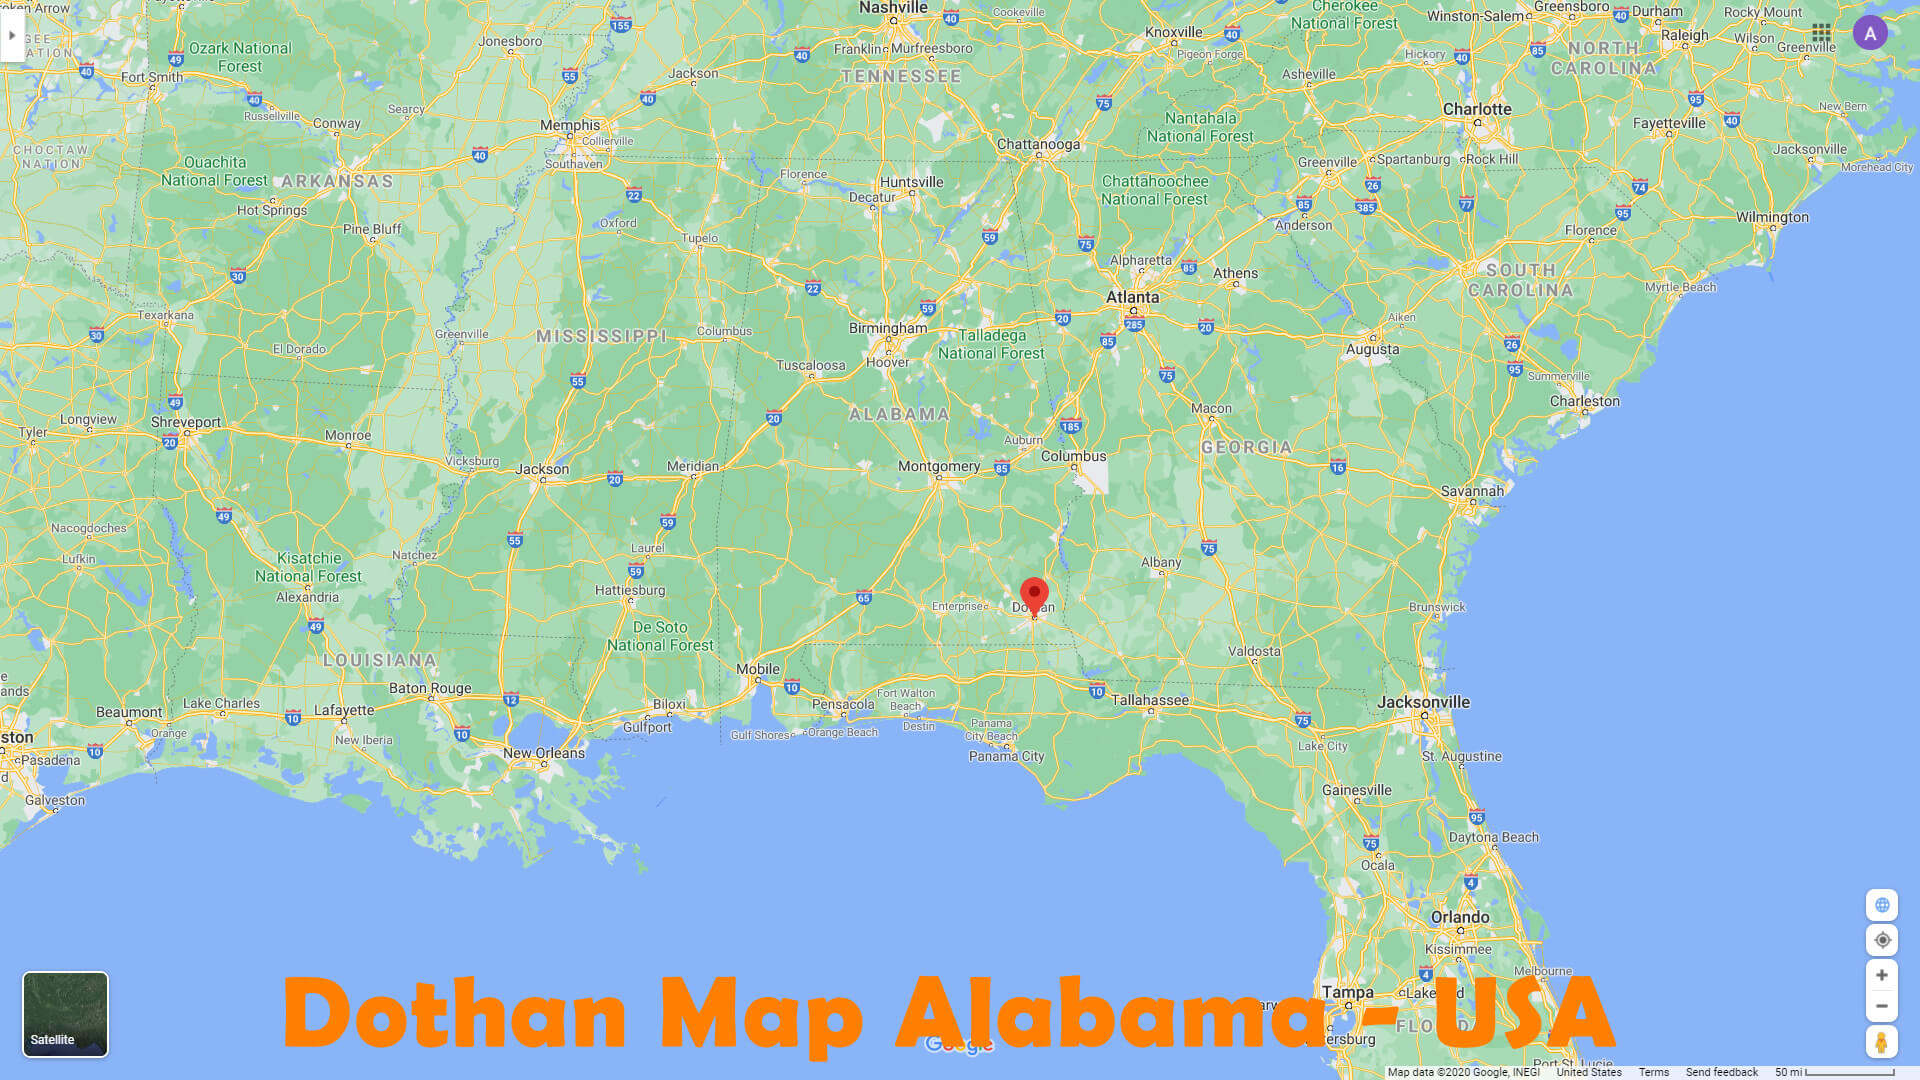 Dothan Map Alabama   USA